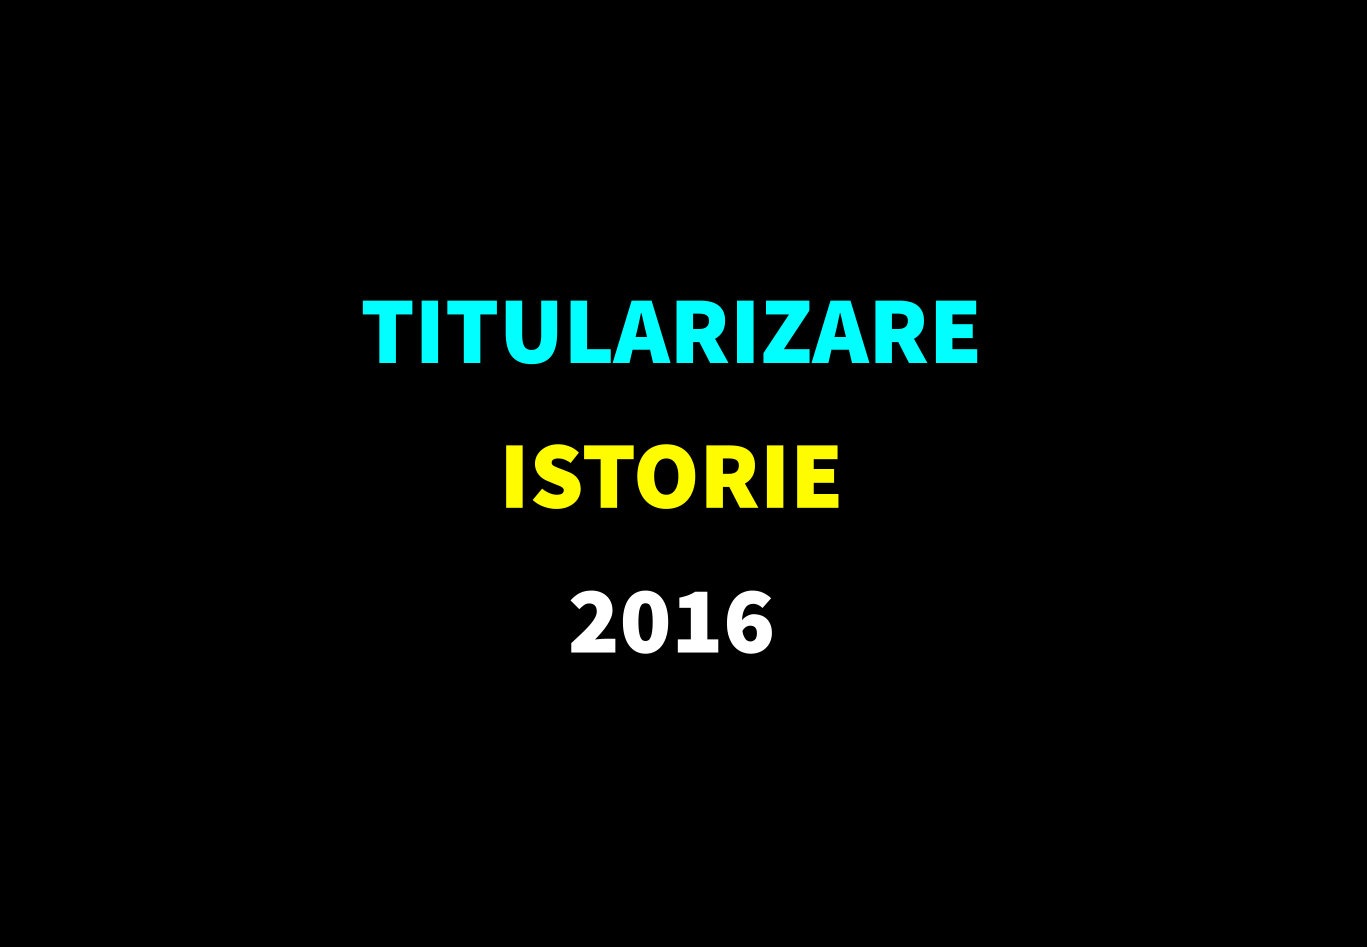 Titularizare istorie 2016